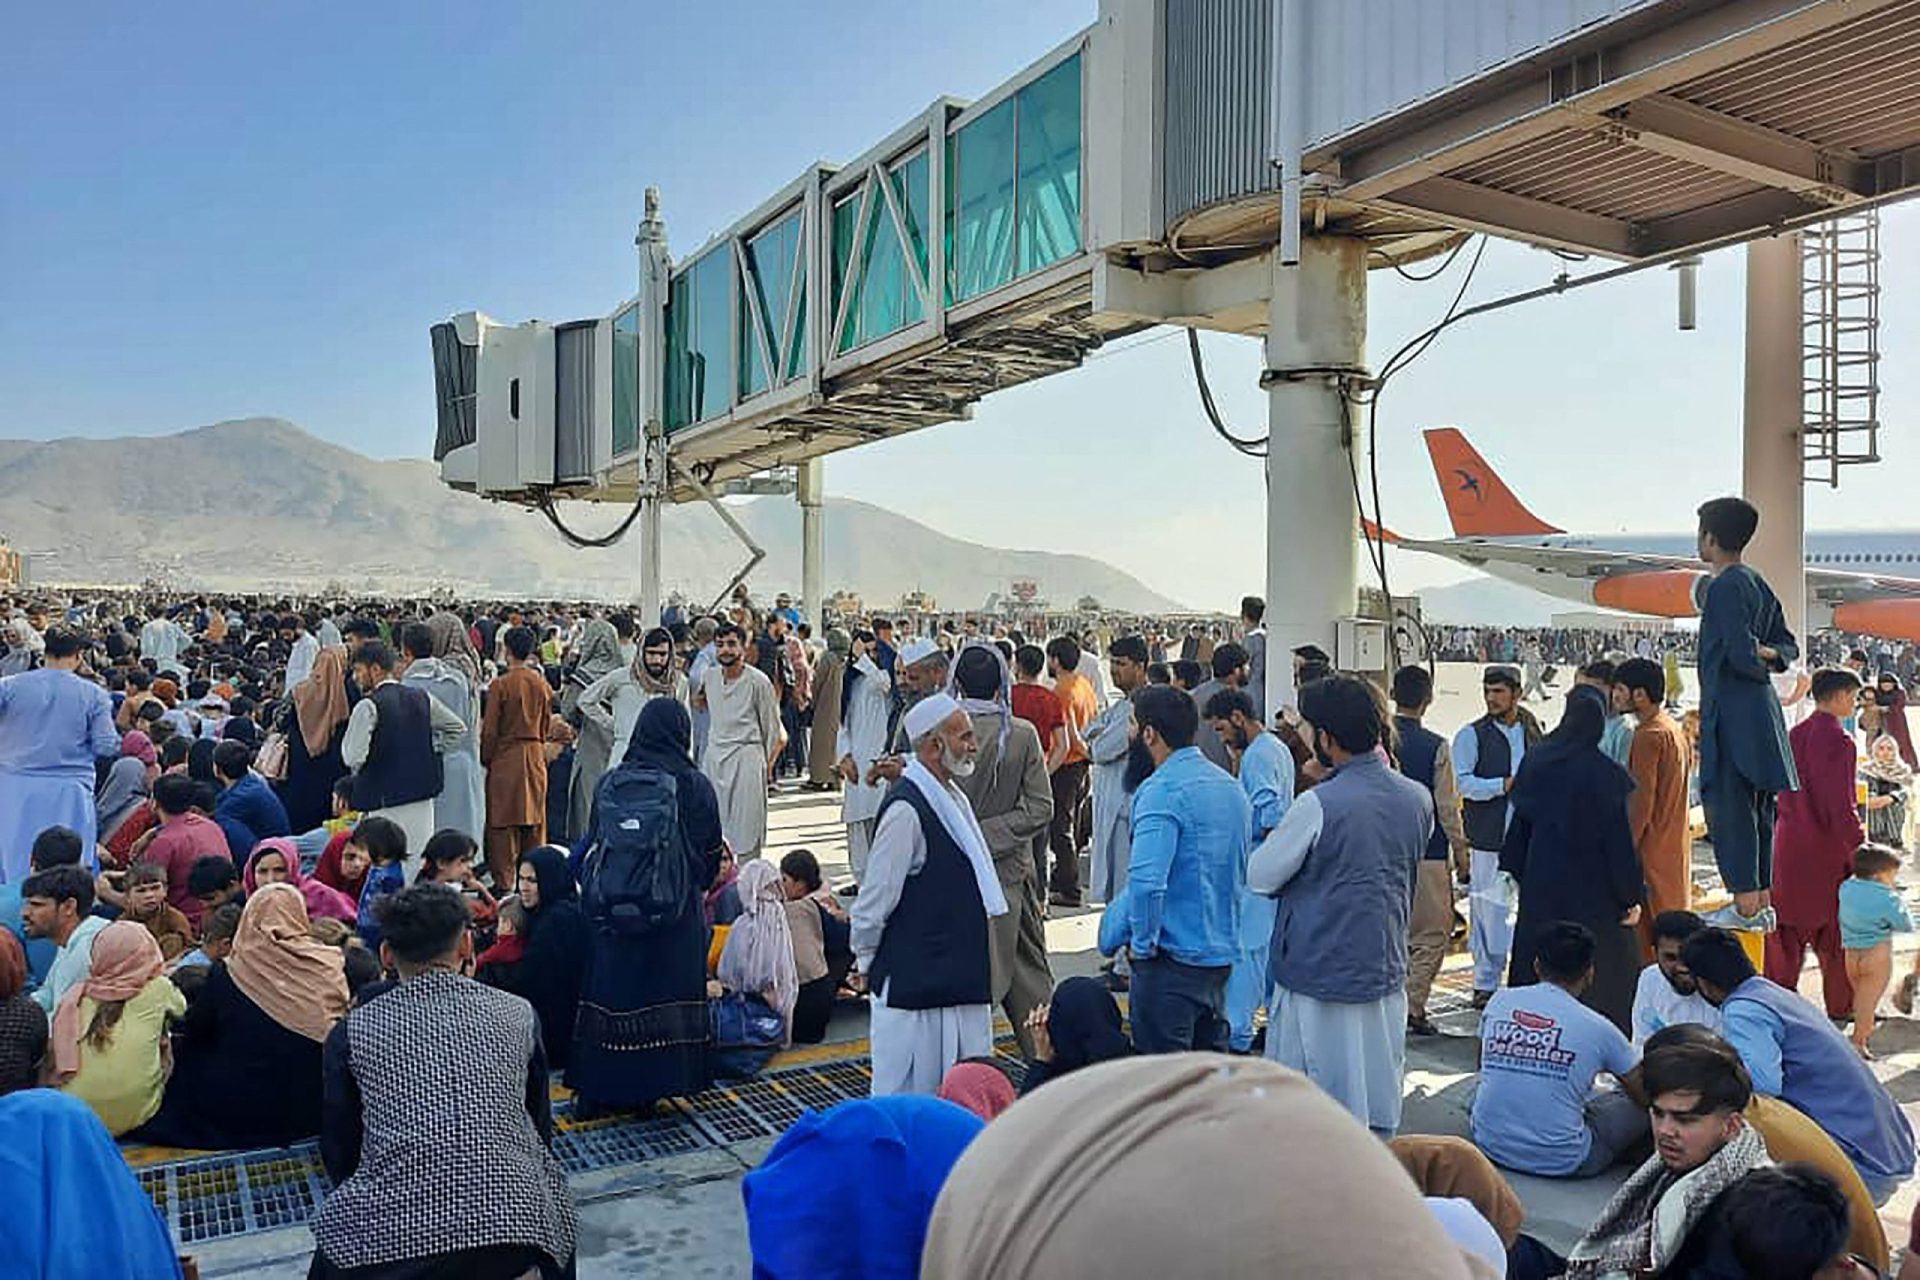 Maioria dos portugueses no Afeganistão já abandonou o país, mas “há quatro ou cinco” ainda no aeroporto